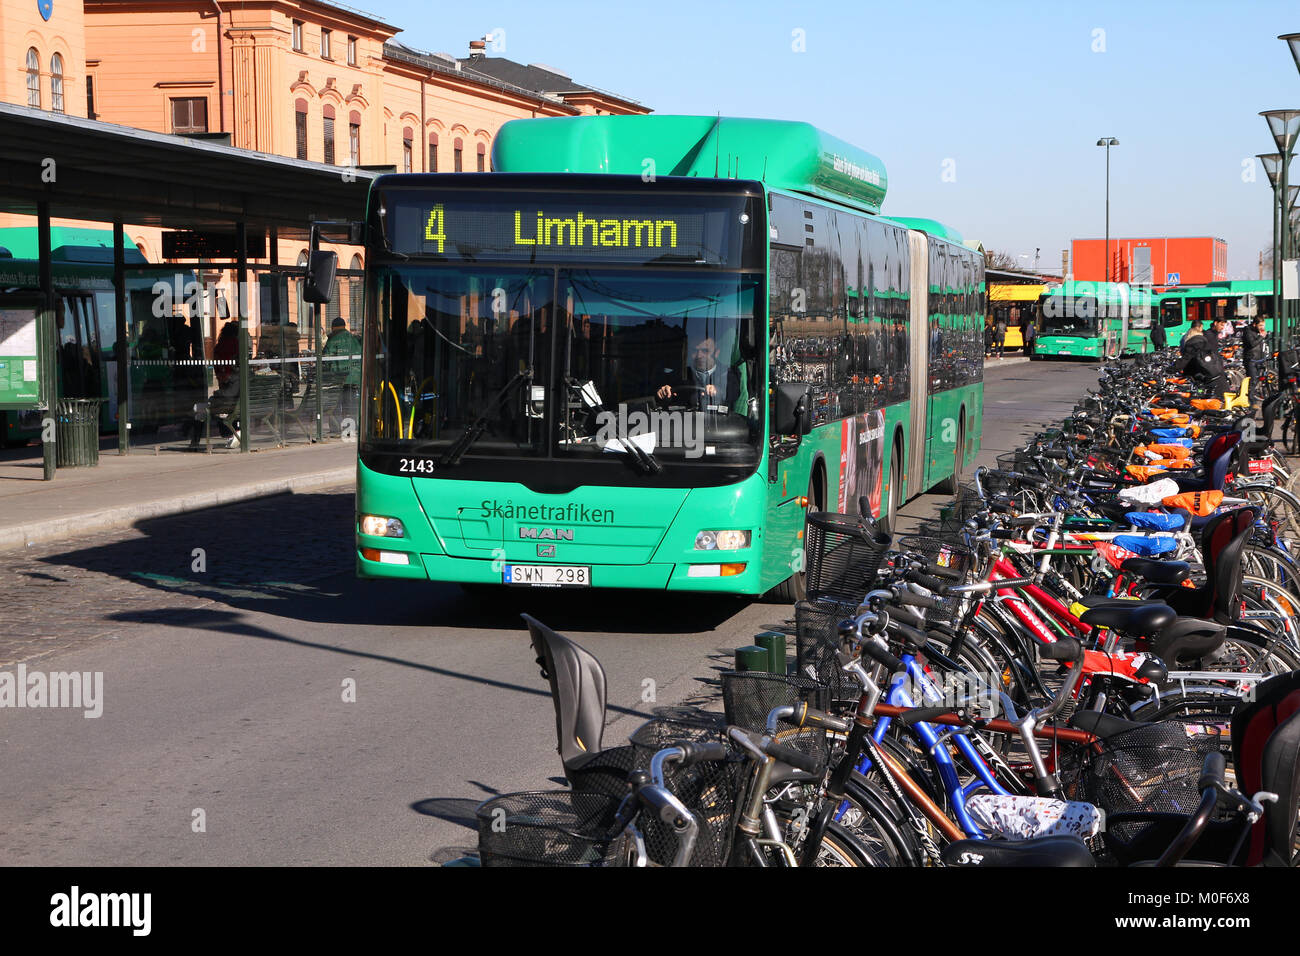 MALMO - Marzo 8: uomo bus e biciclette il 8 marzo 2011 a Malmo, Svezia. Nel 2009 l'uomo consegnato 6,232 gli autobus per i clienti. Il ciclismo è importante competizione Foto Stock